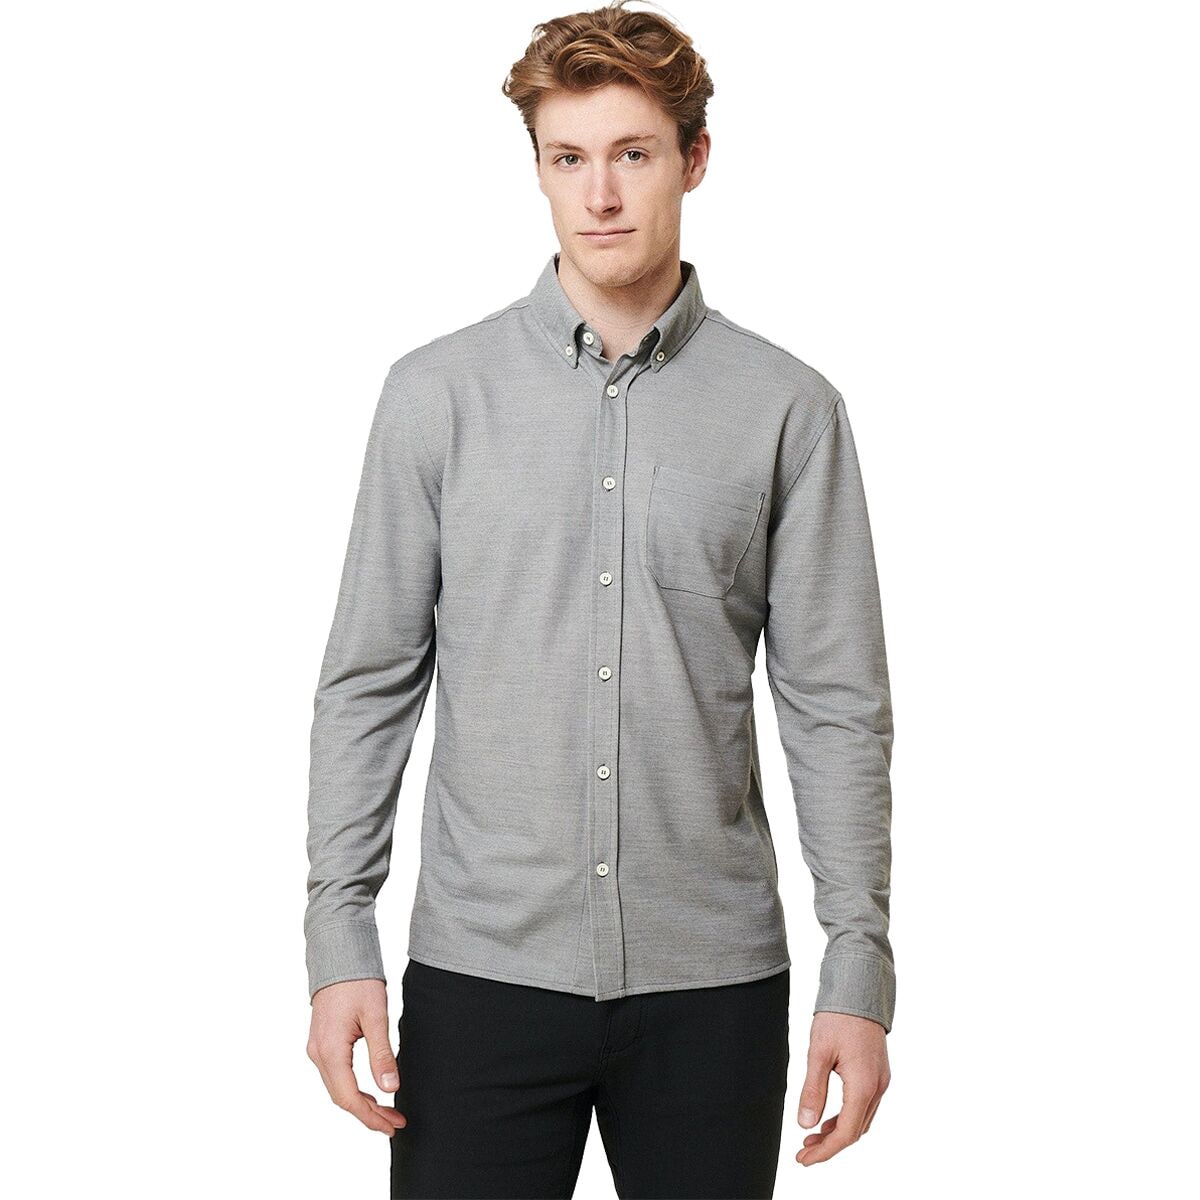 Limitless Merino Button-Down Shirt - Men